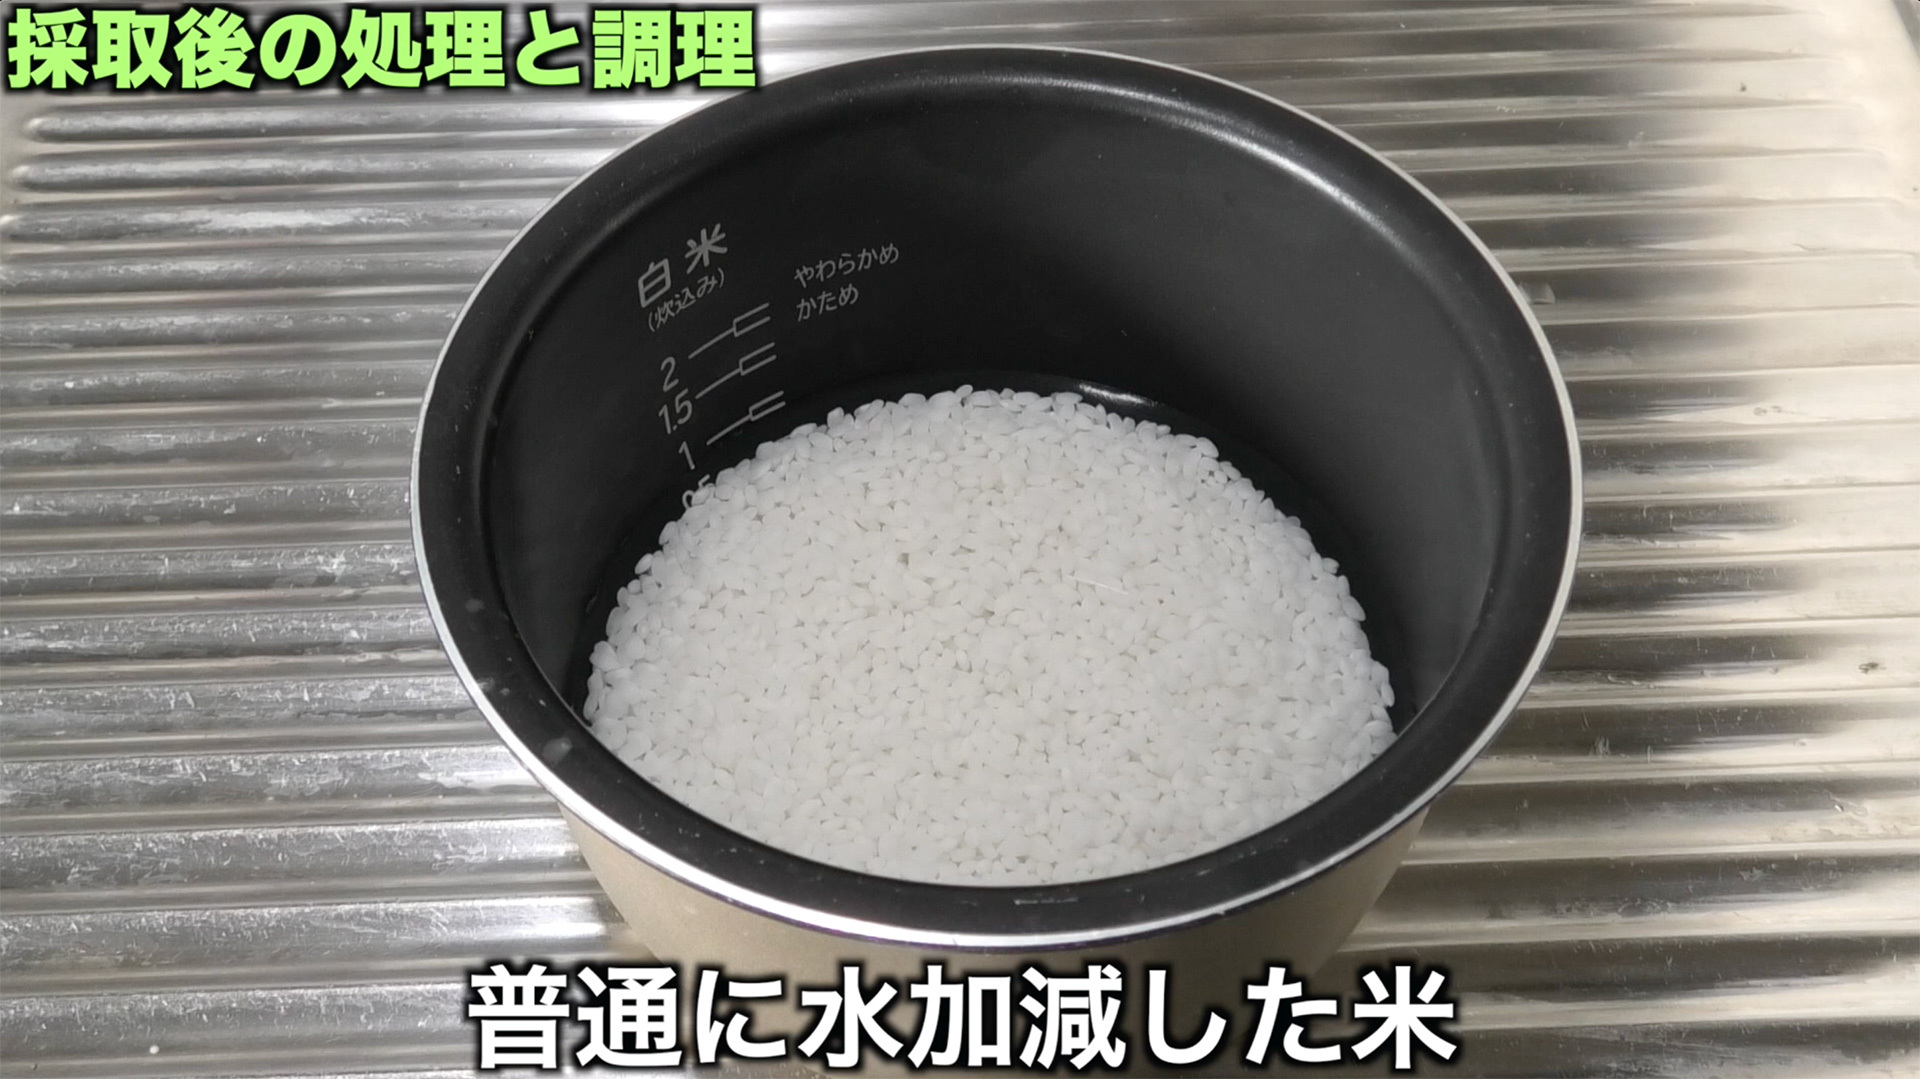 米は普通に水加減する